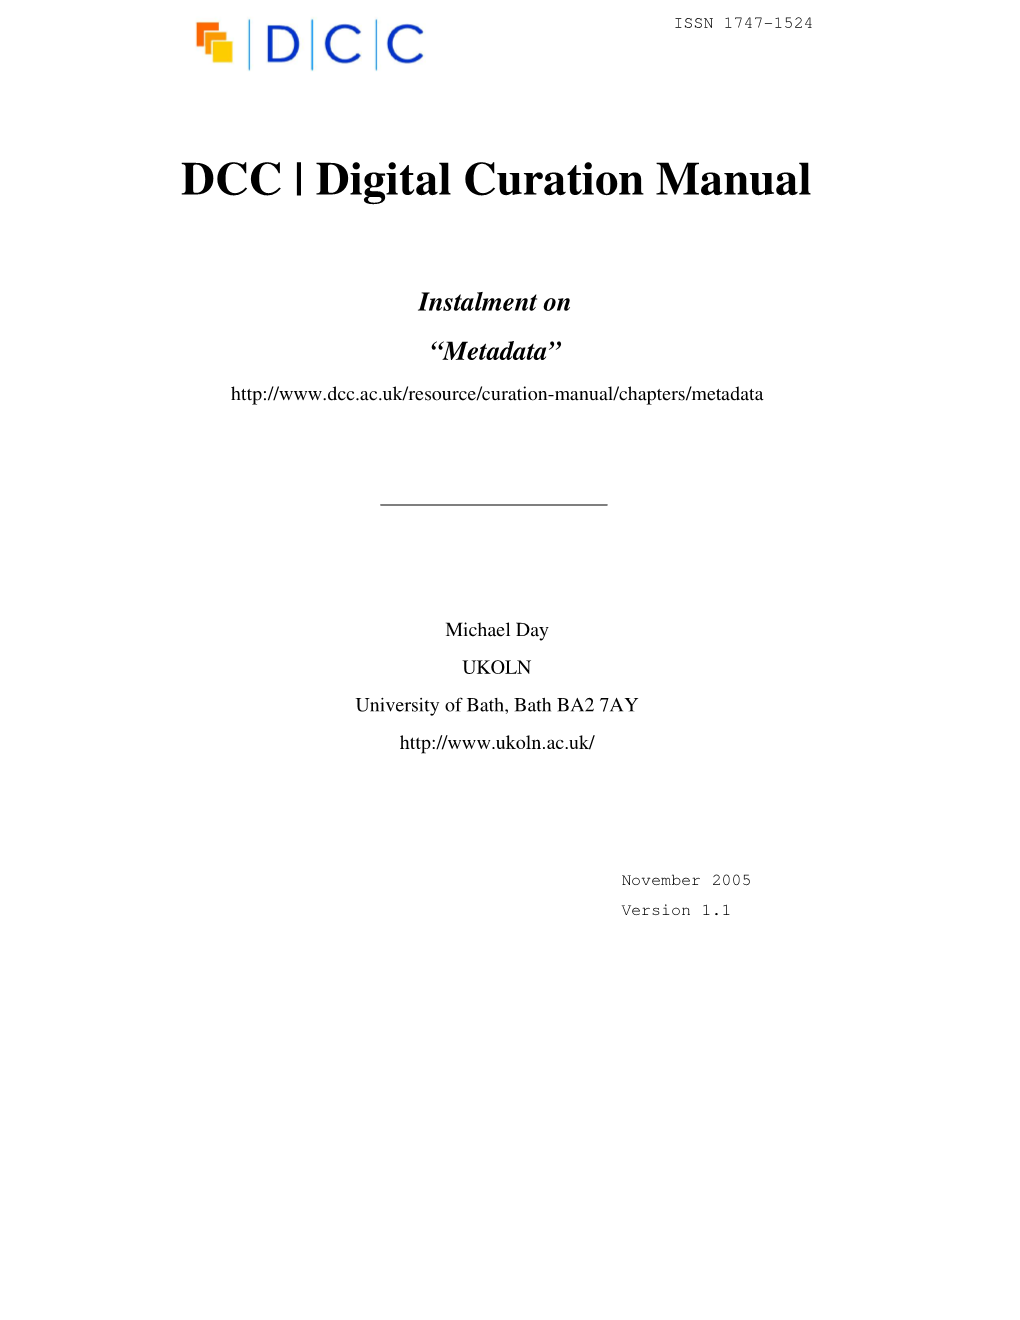 DCC | Digital Curation Manual